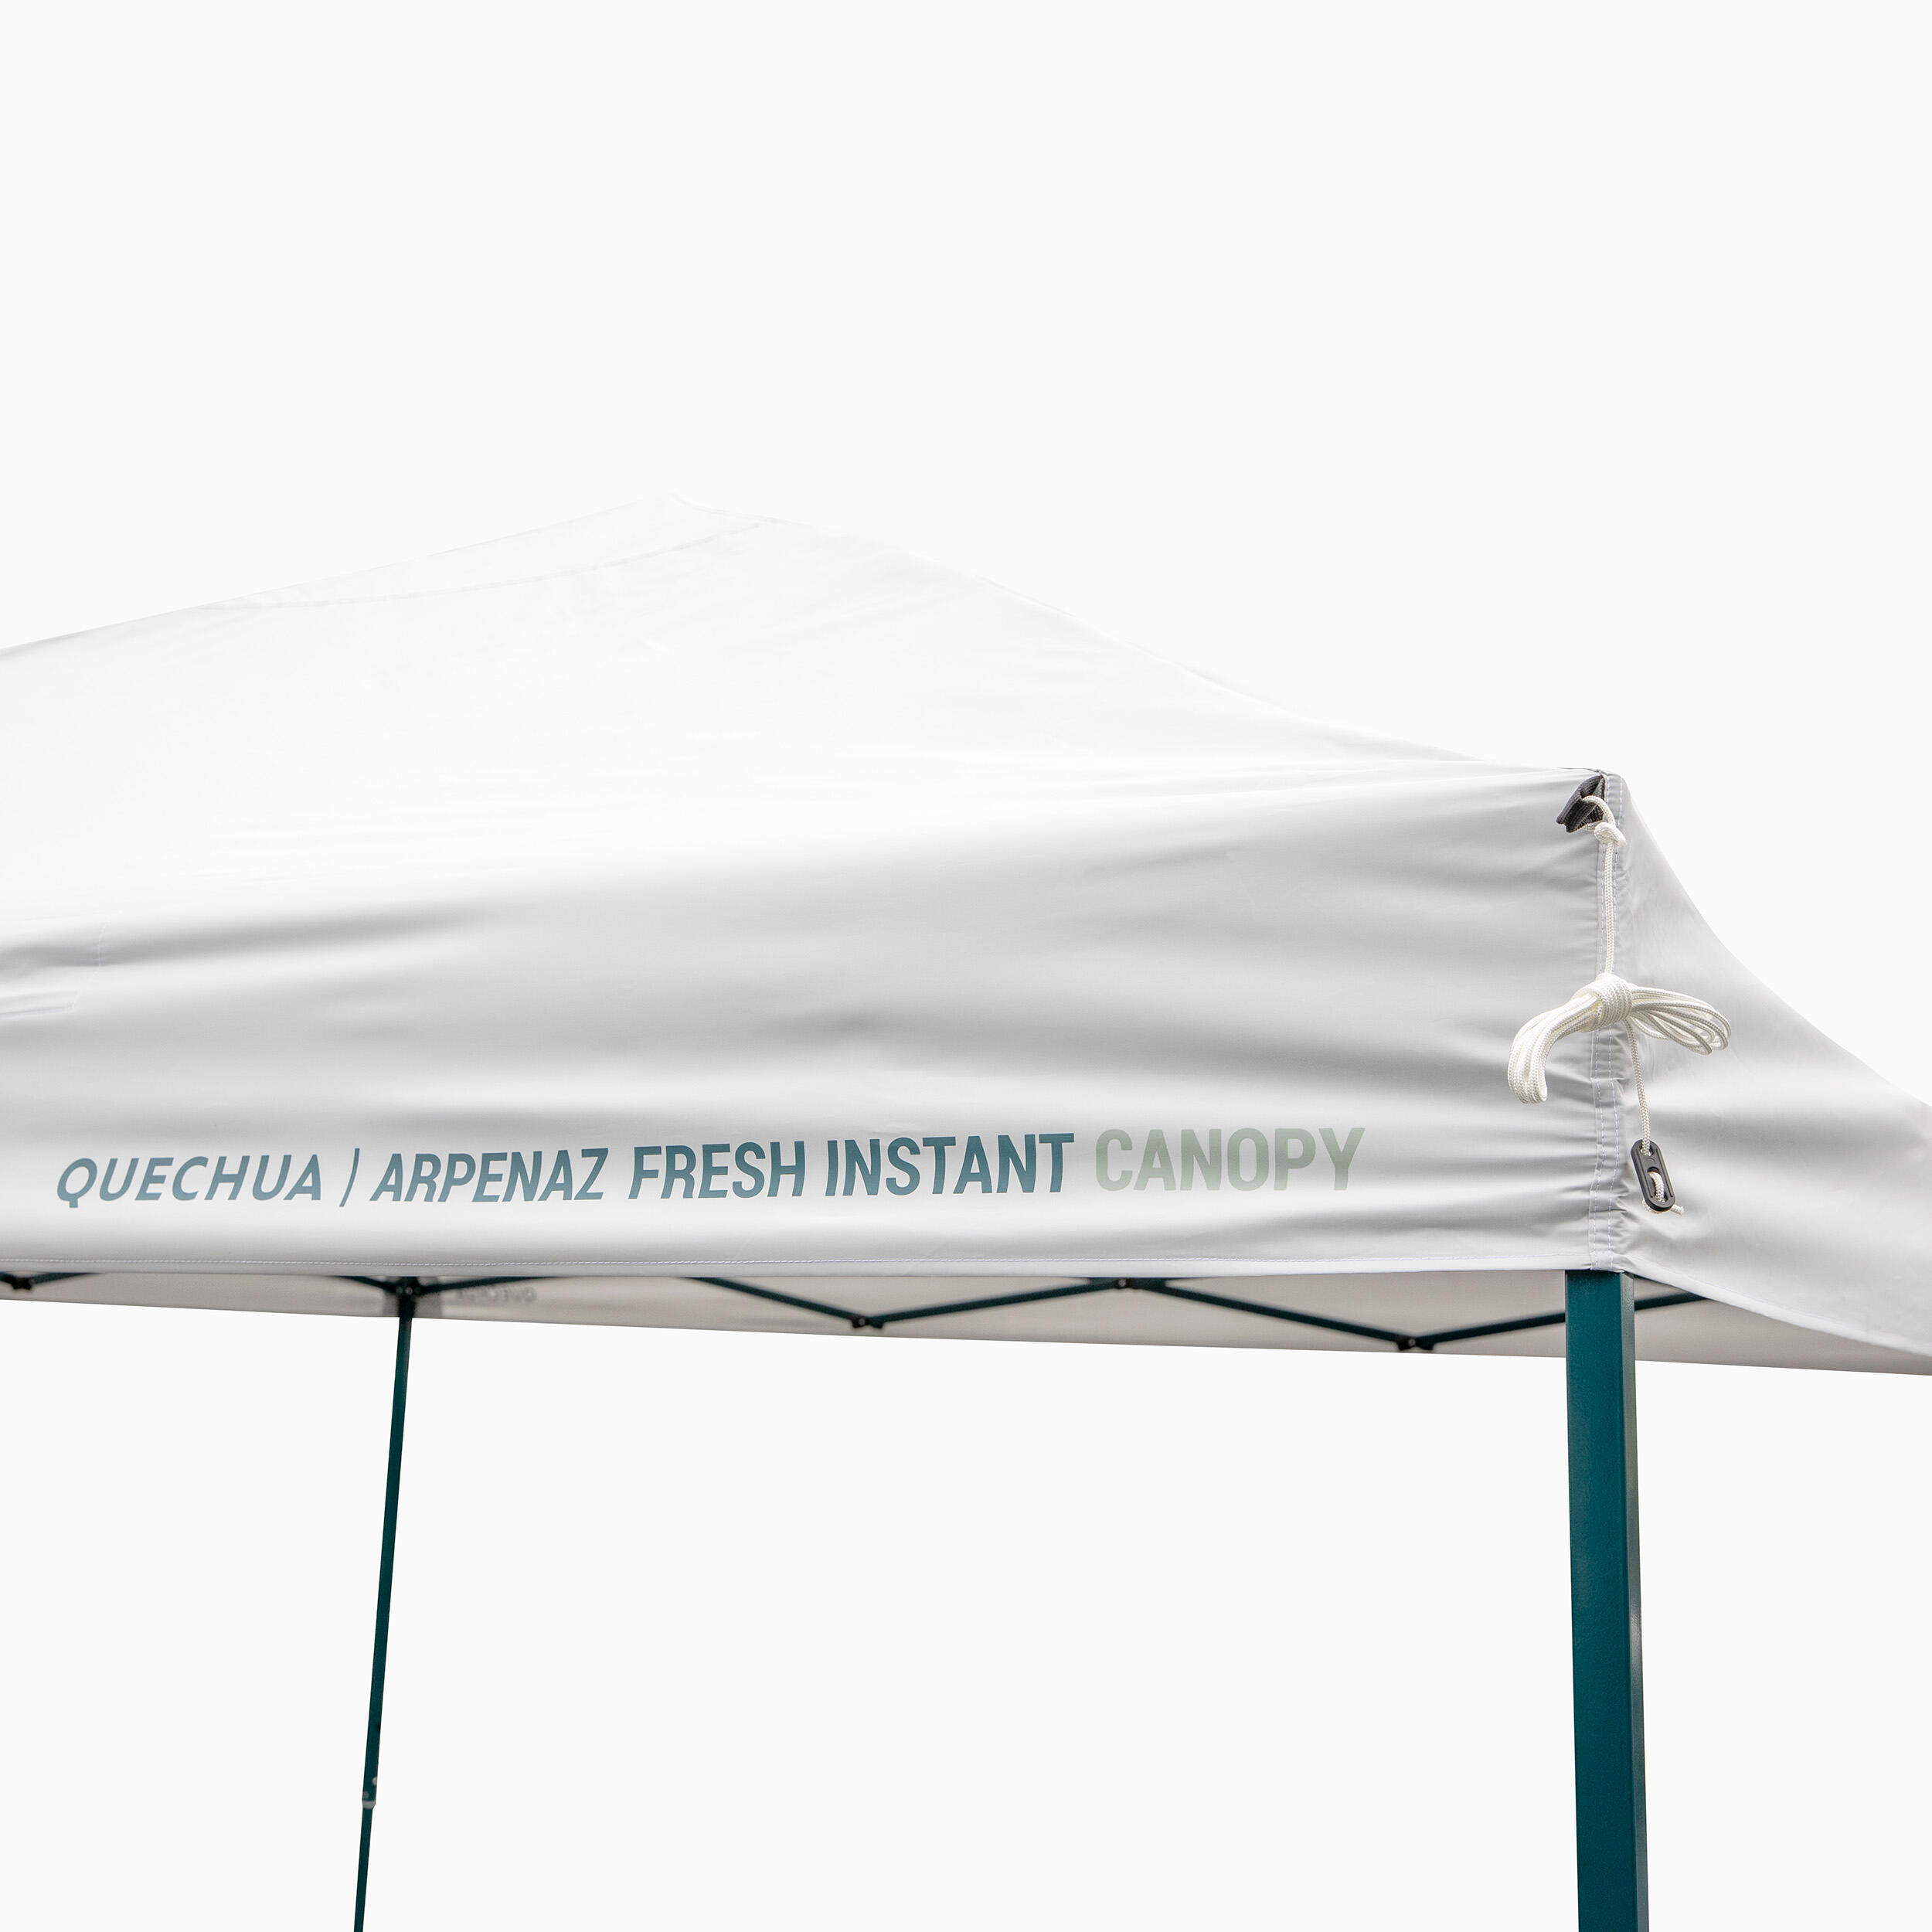 Takduk Till Vindskyddet Arpenaz Instant Canopy Fresh.